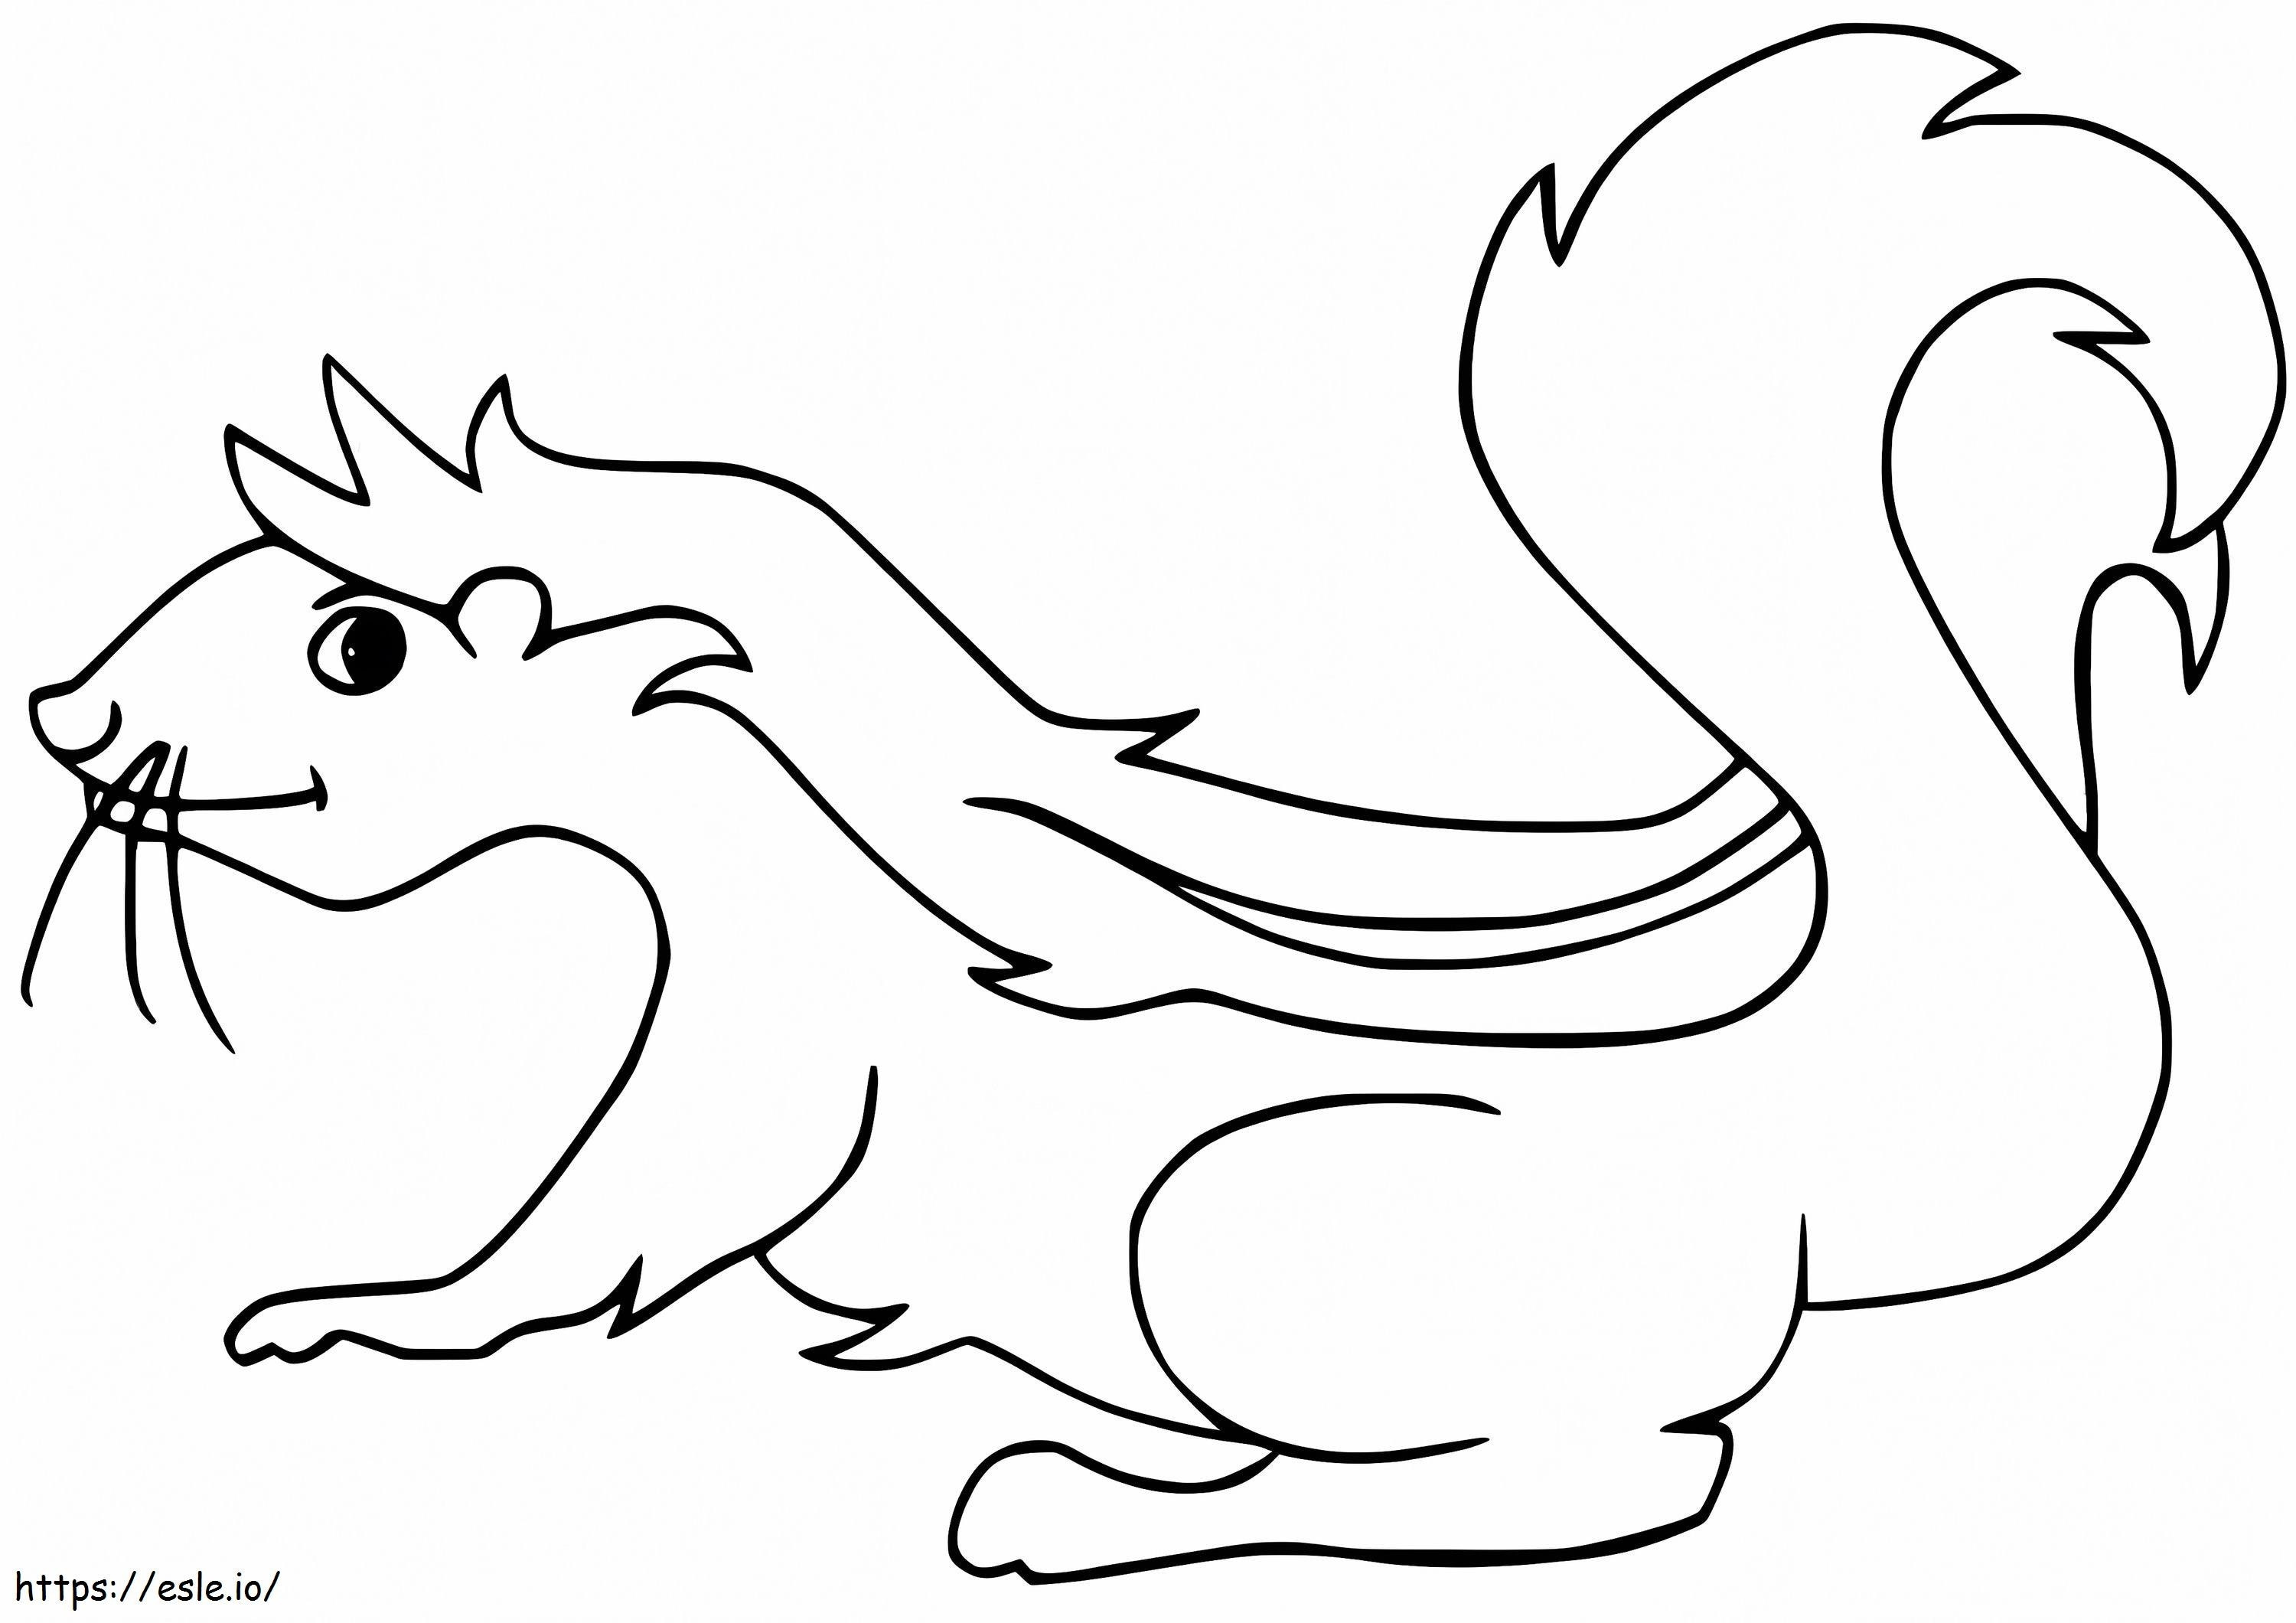 Cartoon Skunk coloring page